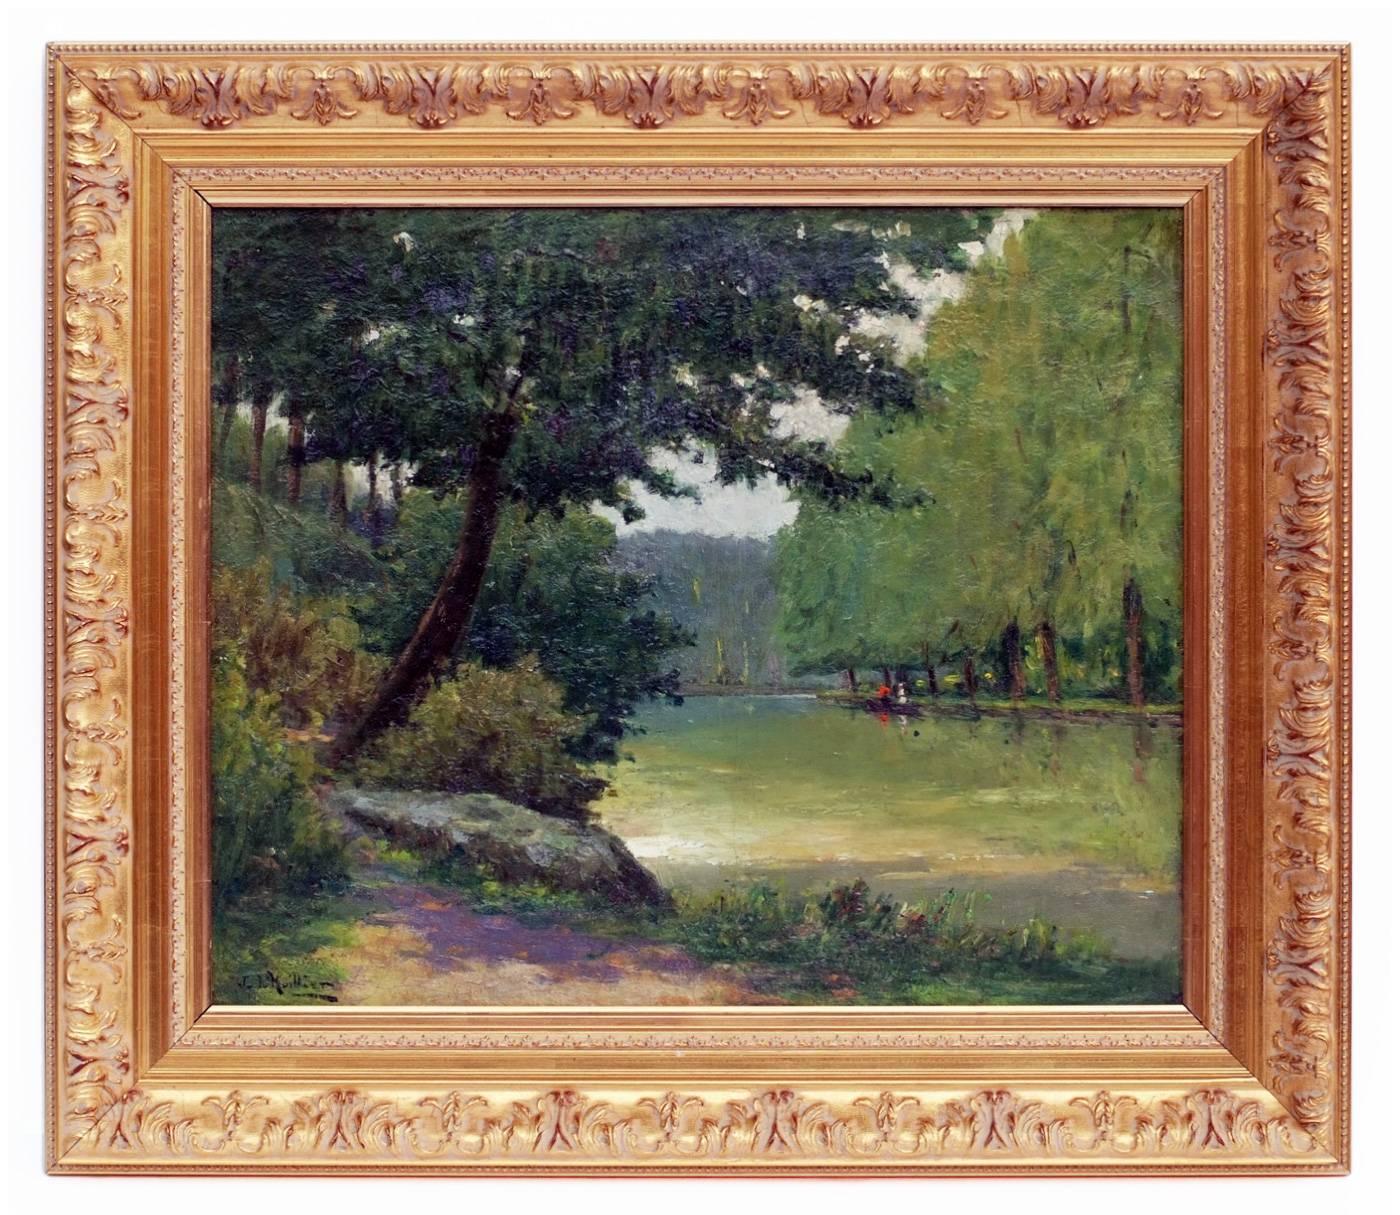 Figurative Painting Jacques L'Huillier - Peinture - Paysage postimpressionniste français du 19ème siècle - Paysage